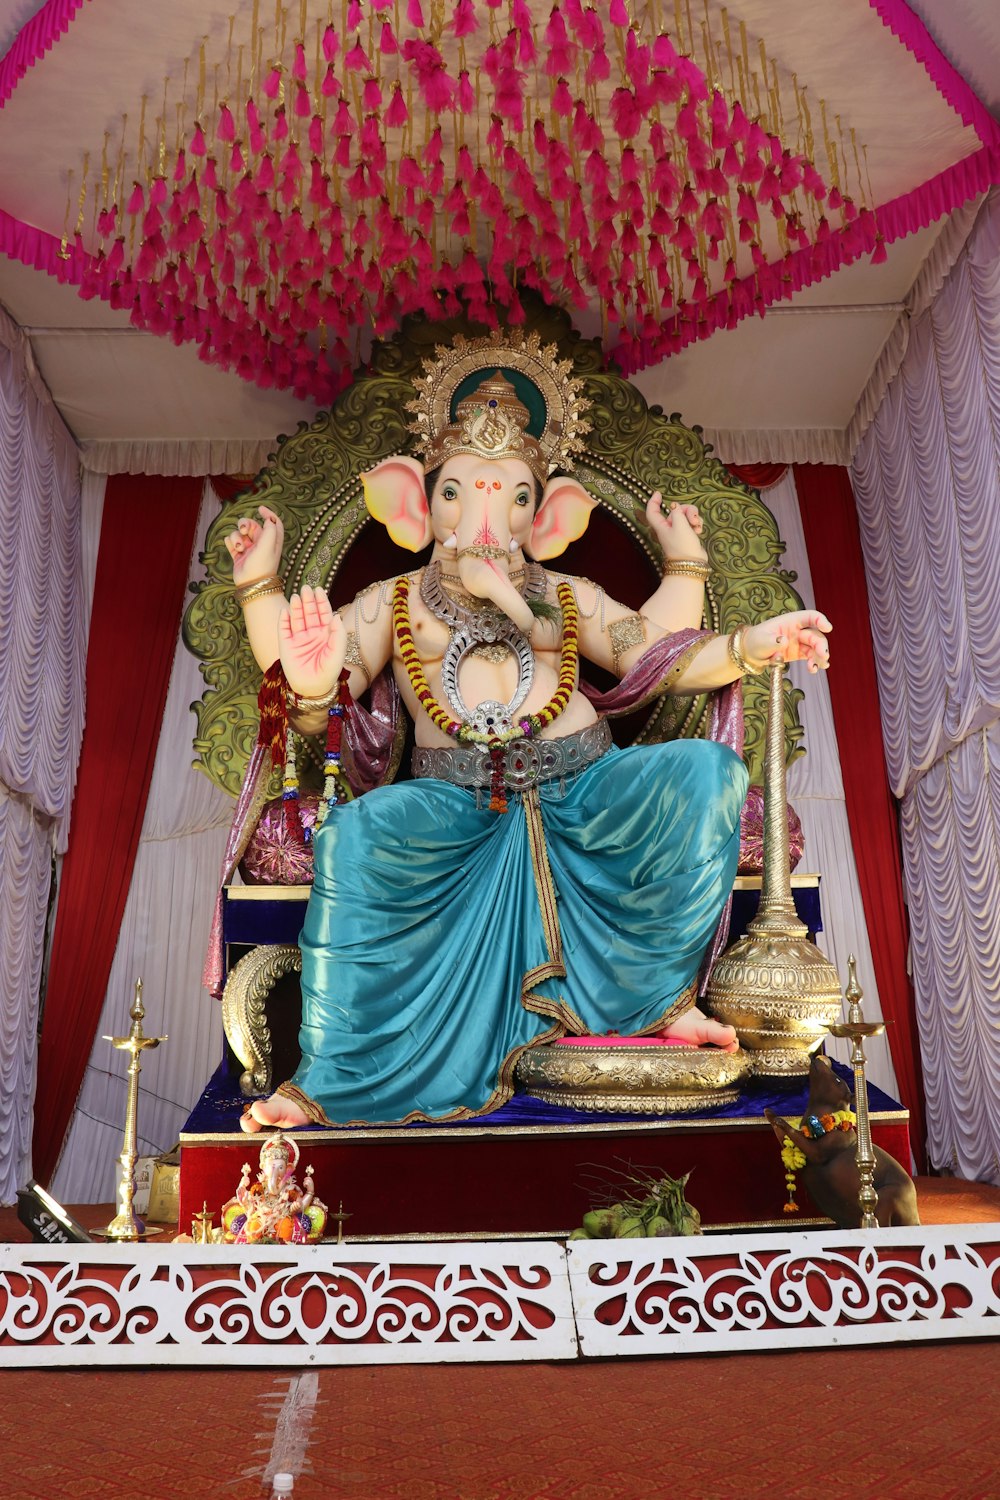 Lord Ganesha sitting statue on altar